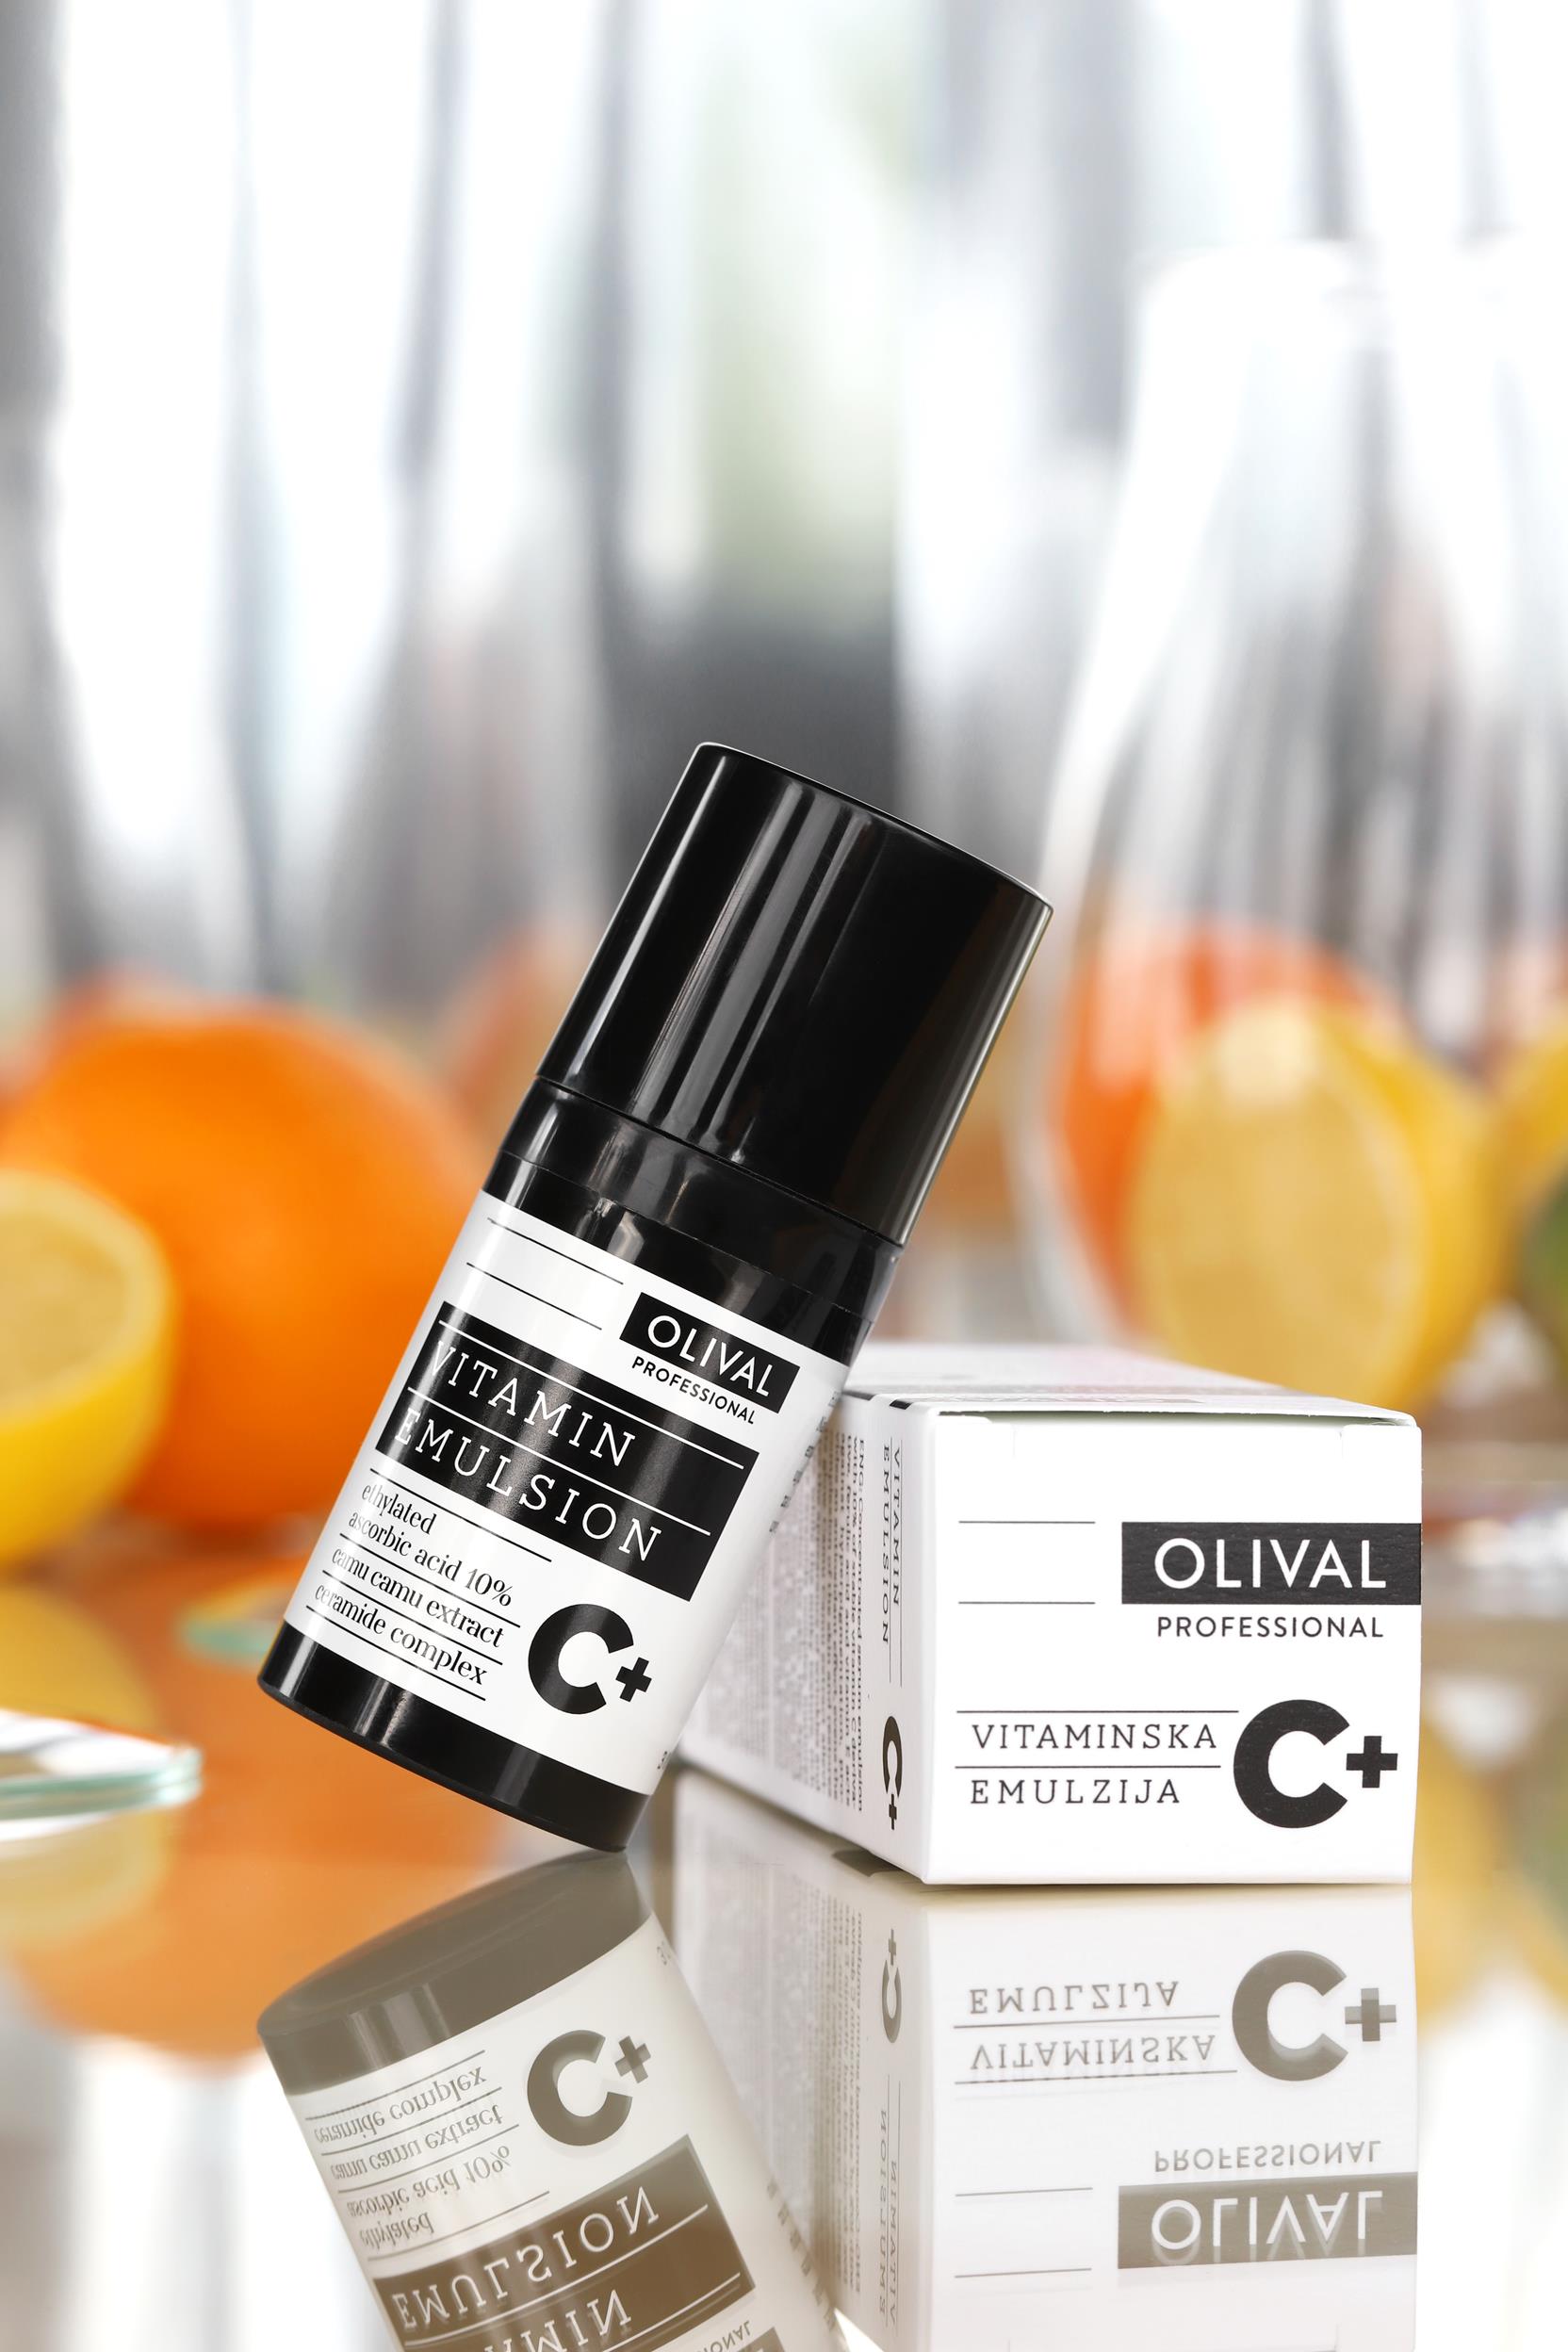 Ova dva nova proizvoda sadrže najstabilniji derivat vitamina C, a dolaze iz laboratorija domaćeg brenda Olival